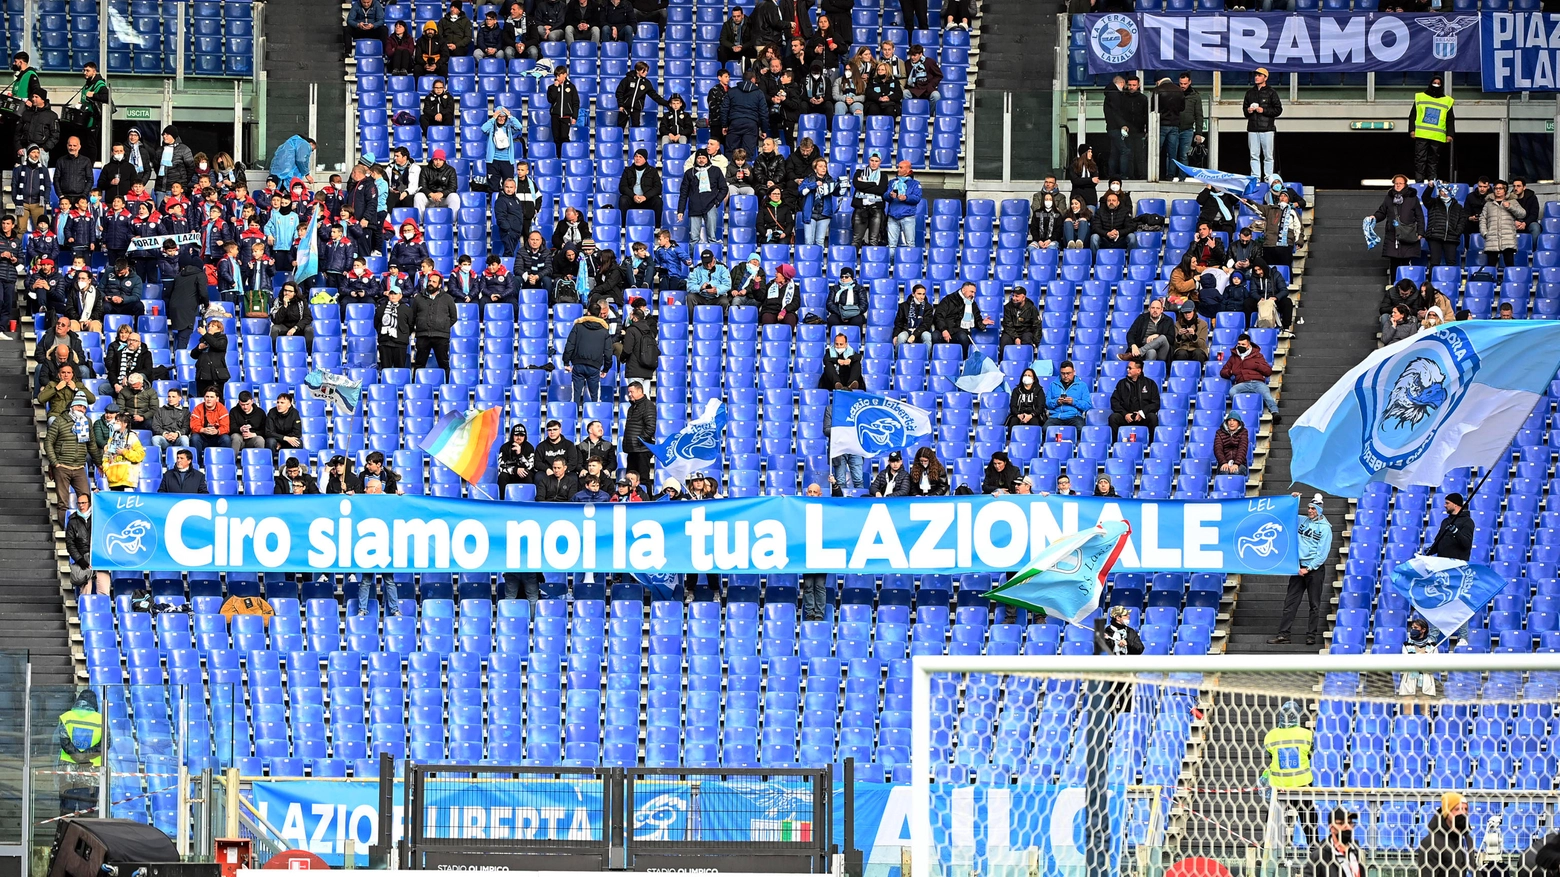 La Lazio richiama i tifosi allo stadio con prezzi popolari